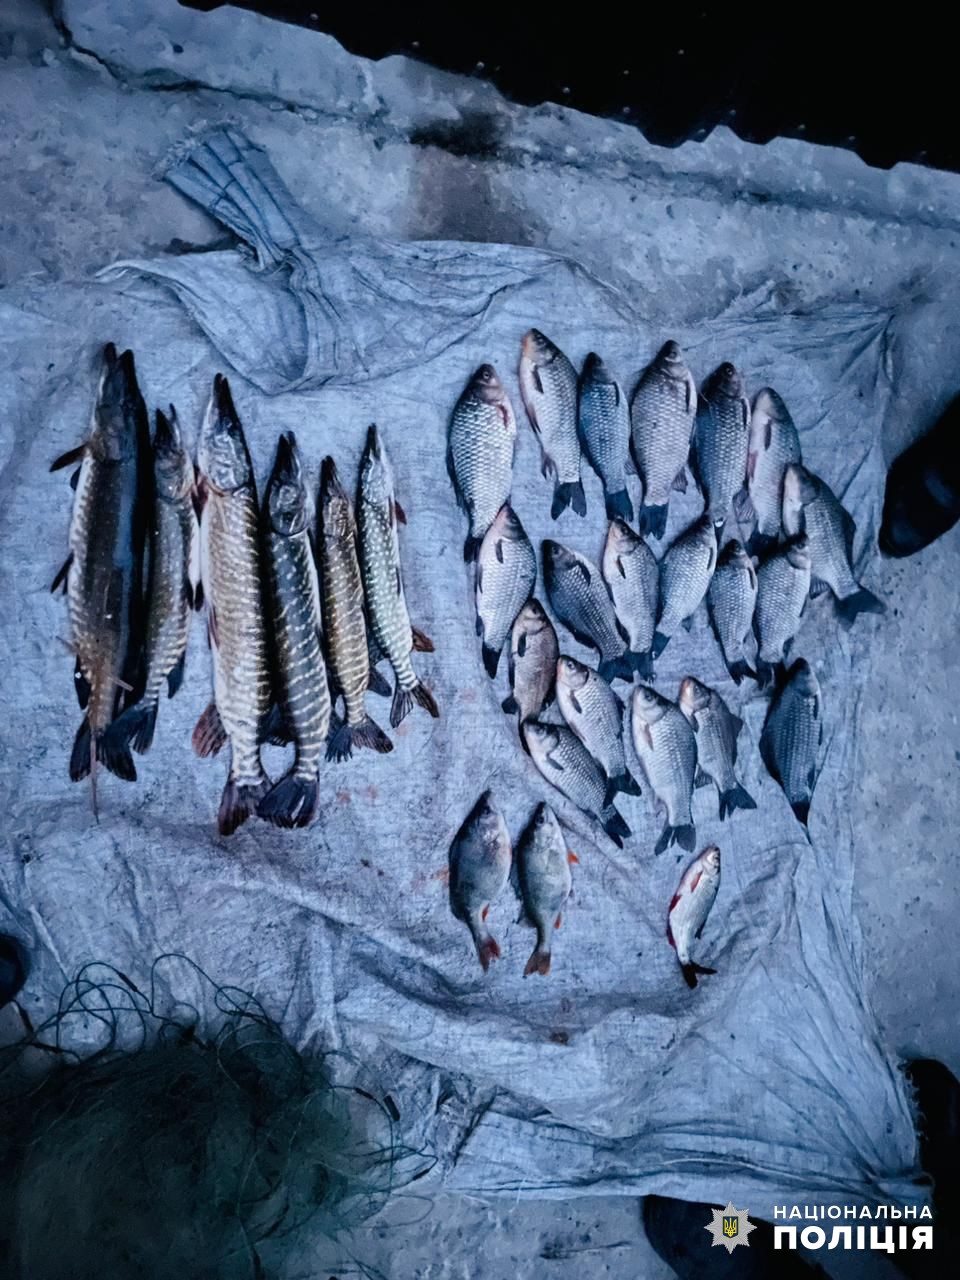 На Одещині продовжують працювати браконьєри: чергових поціновувачів рибалки у заборону вже затримано